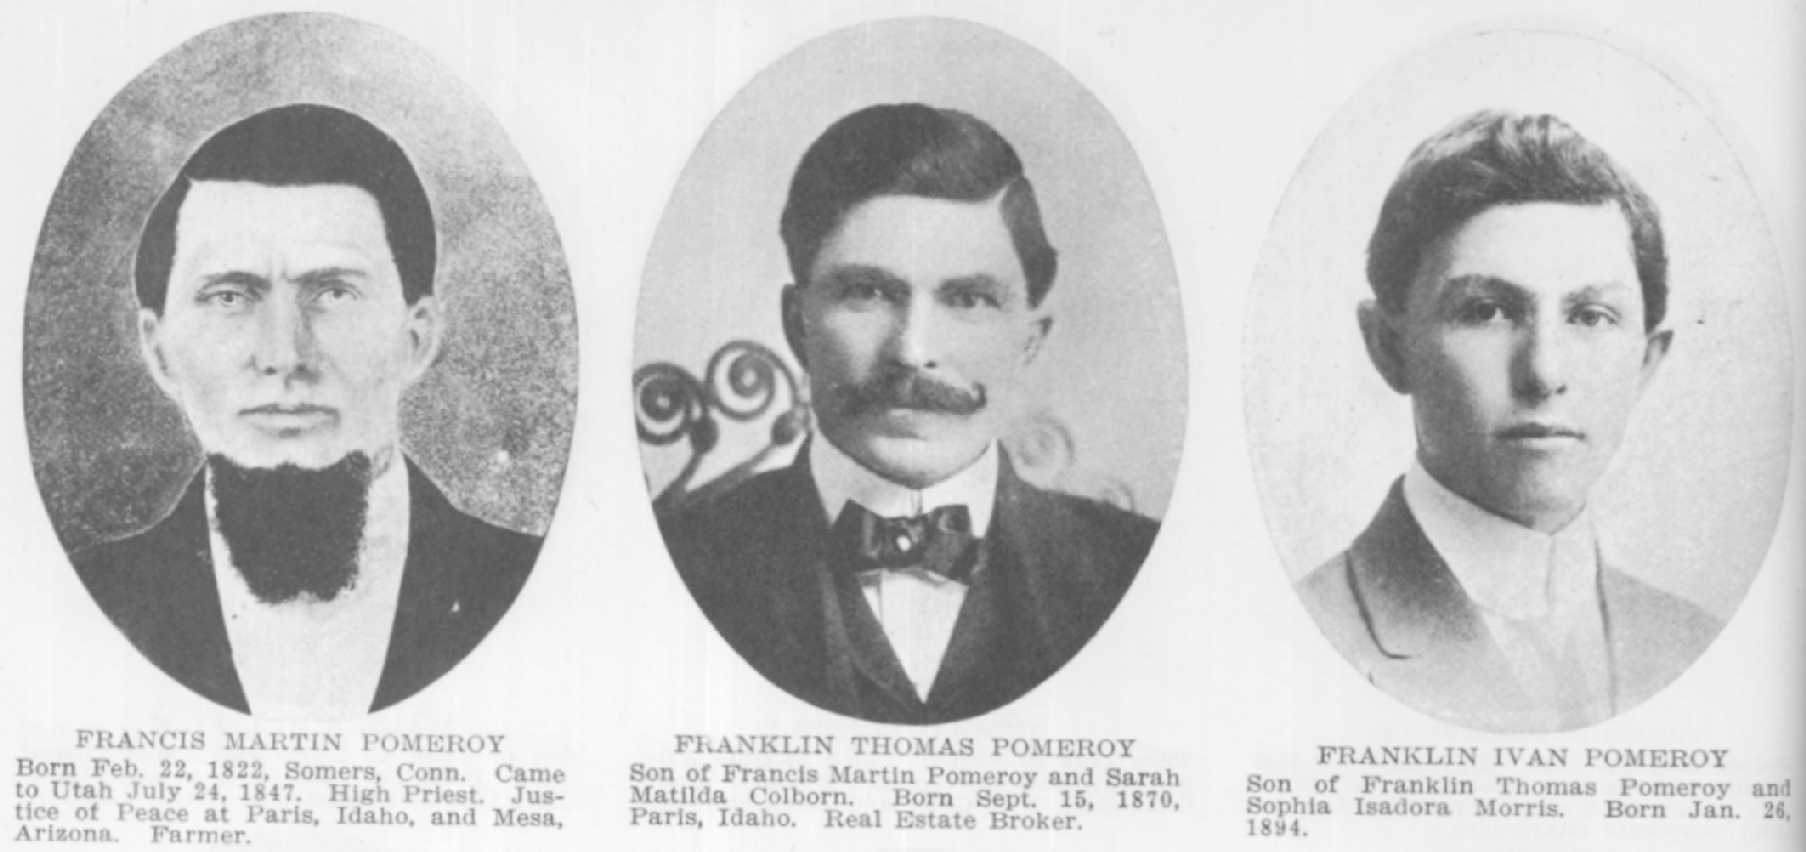 Francis Martin Pomeroy, Franklin Pomeroy, Franklin Ivan Pomeroy